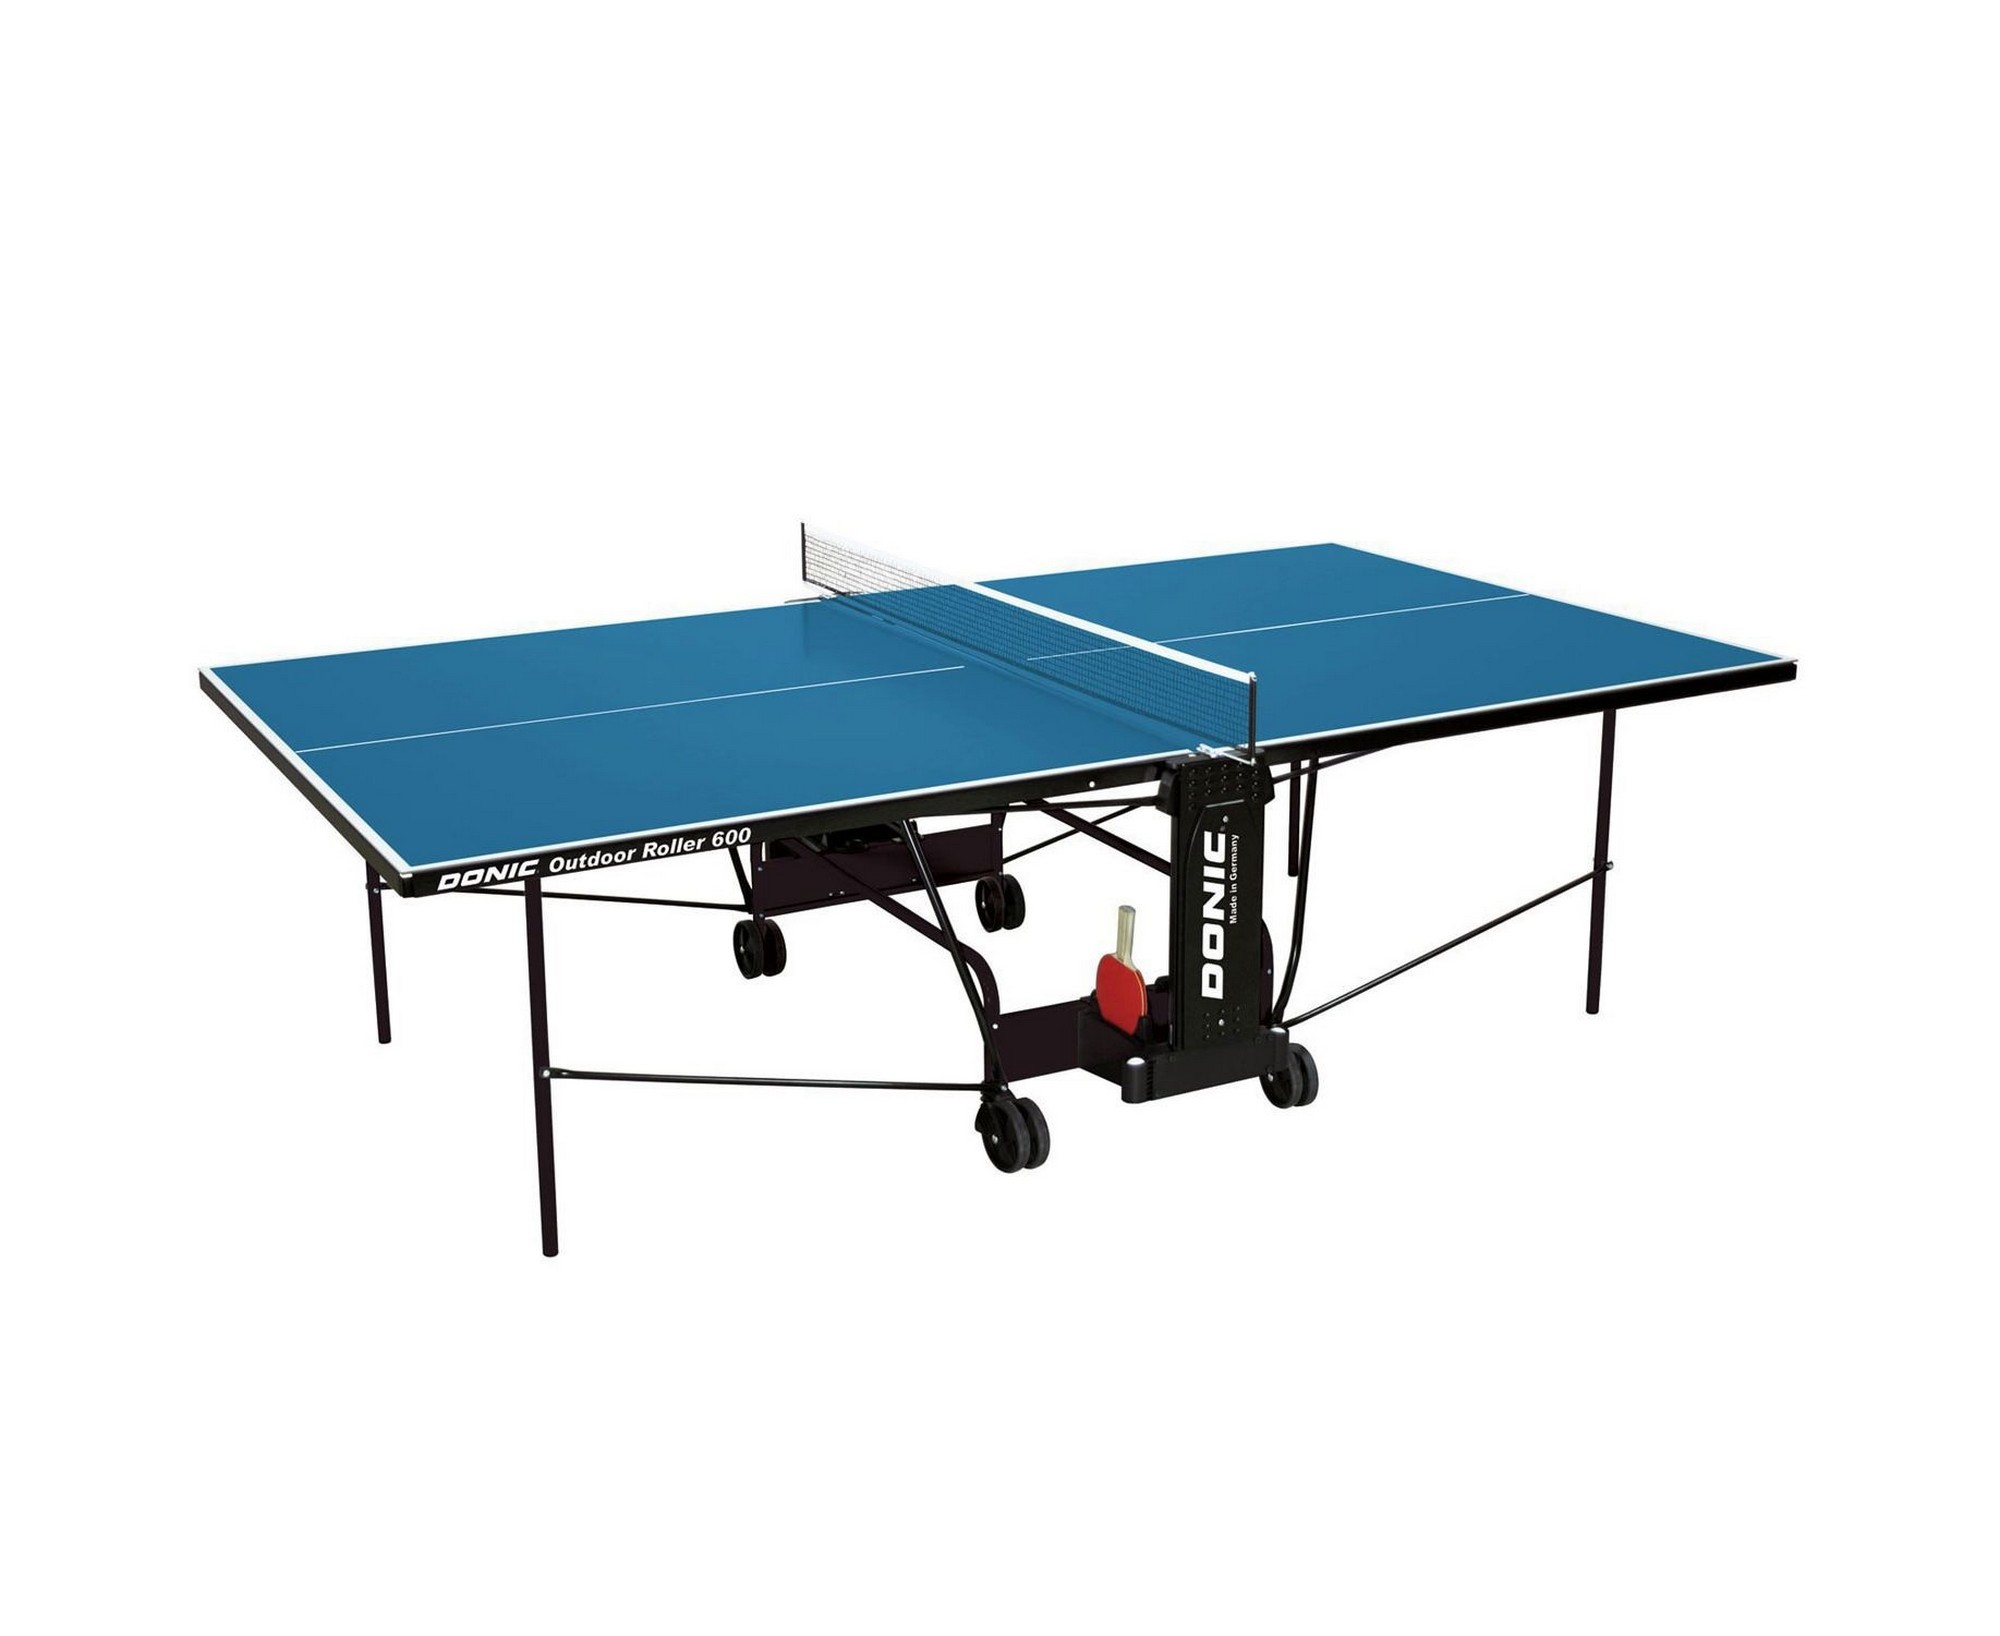 Теннисный стол Donic Outdoor Roller 600 230293-B синий 2000_1636